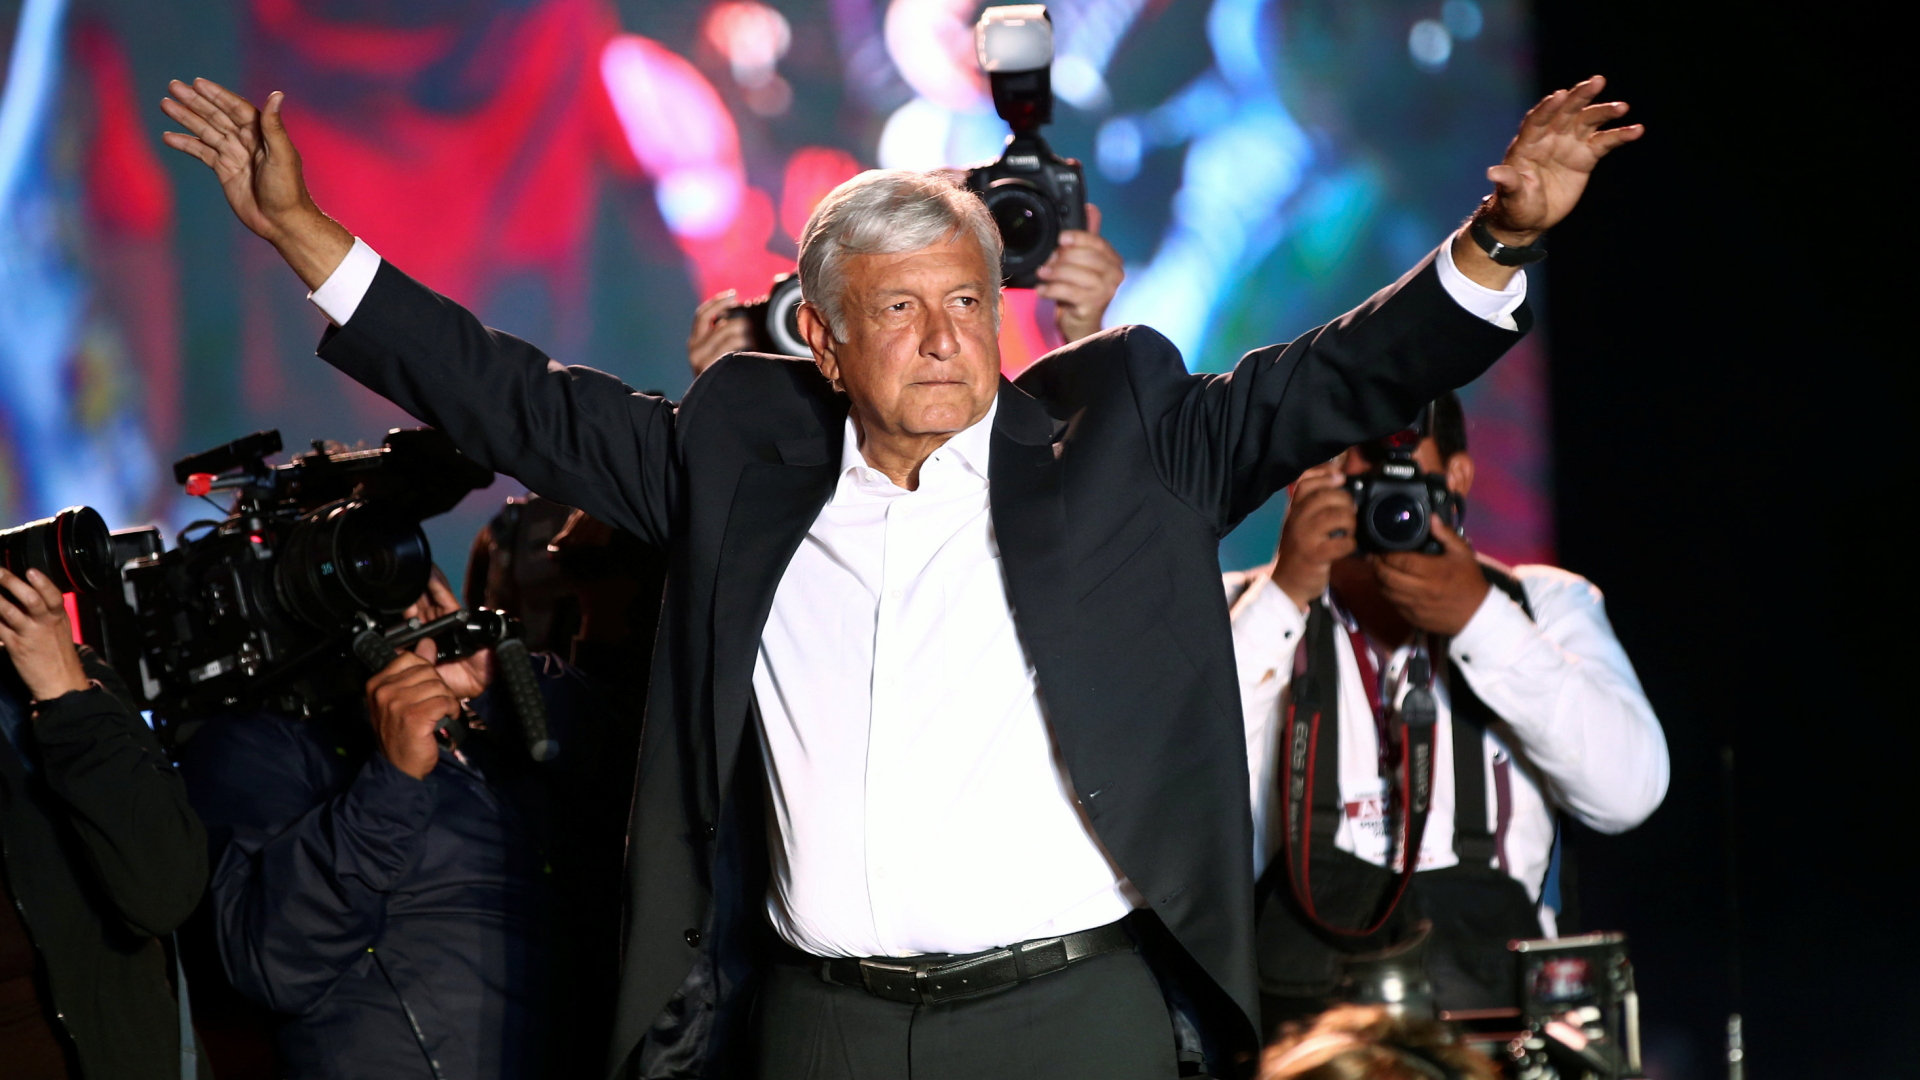 Präsidentschaftskandidat Andres Manuel Lopez Obrador während eines Wahlkampfauftritts in Mexiko-Stadt | Bildquelle: REUTERS